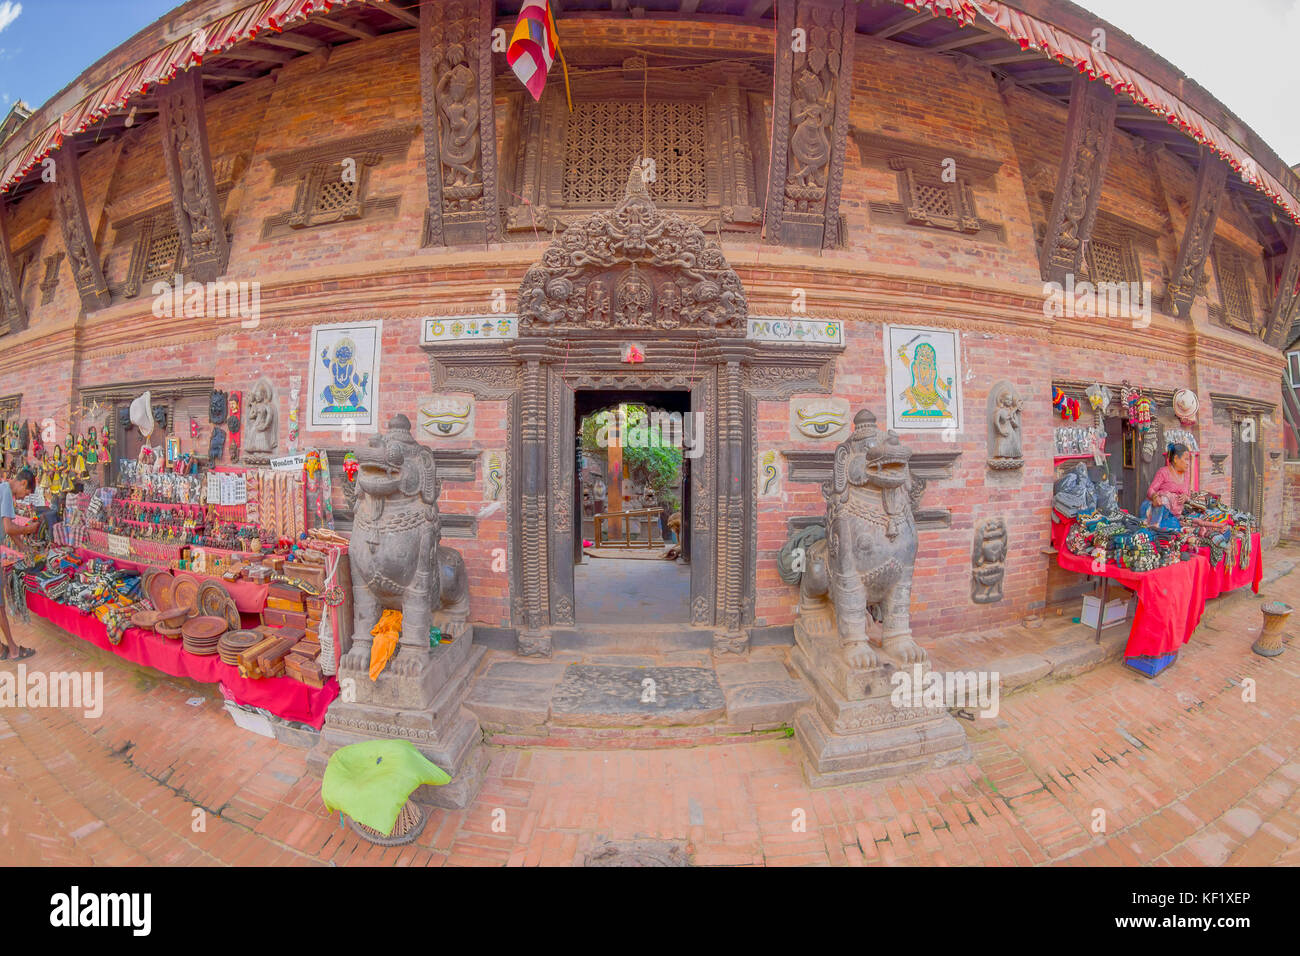 Bhaktapur, Népal - novembre 04, 2017 : deux lions en pierre à l'entrée d'un temple avec un marché de rue près de od les statues dans le temple de Nyatapola sur taumadhi tole, Bhaktapur, Népal Banque D'Images